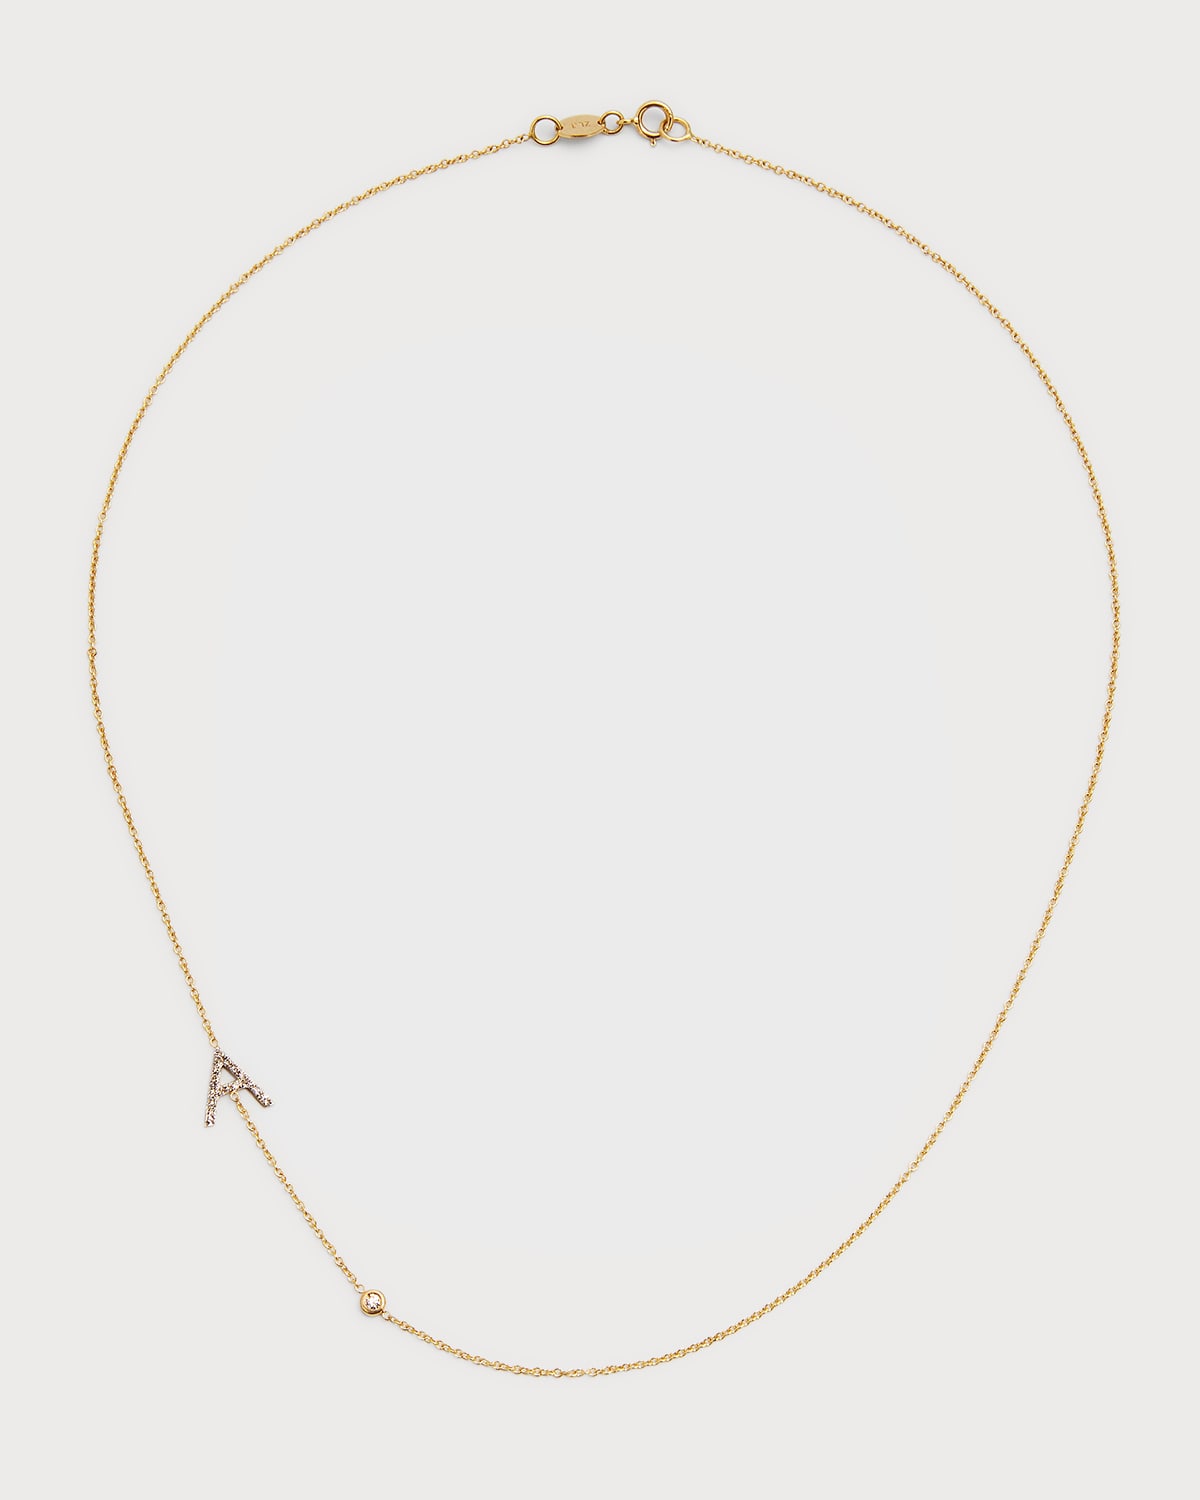 Zoe Lev Jewelry 14k Yellow Gold Personalized Asymmetric Diamond Initial & Bezel Necklace